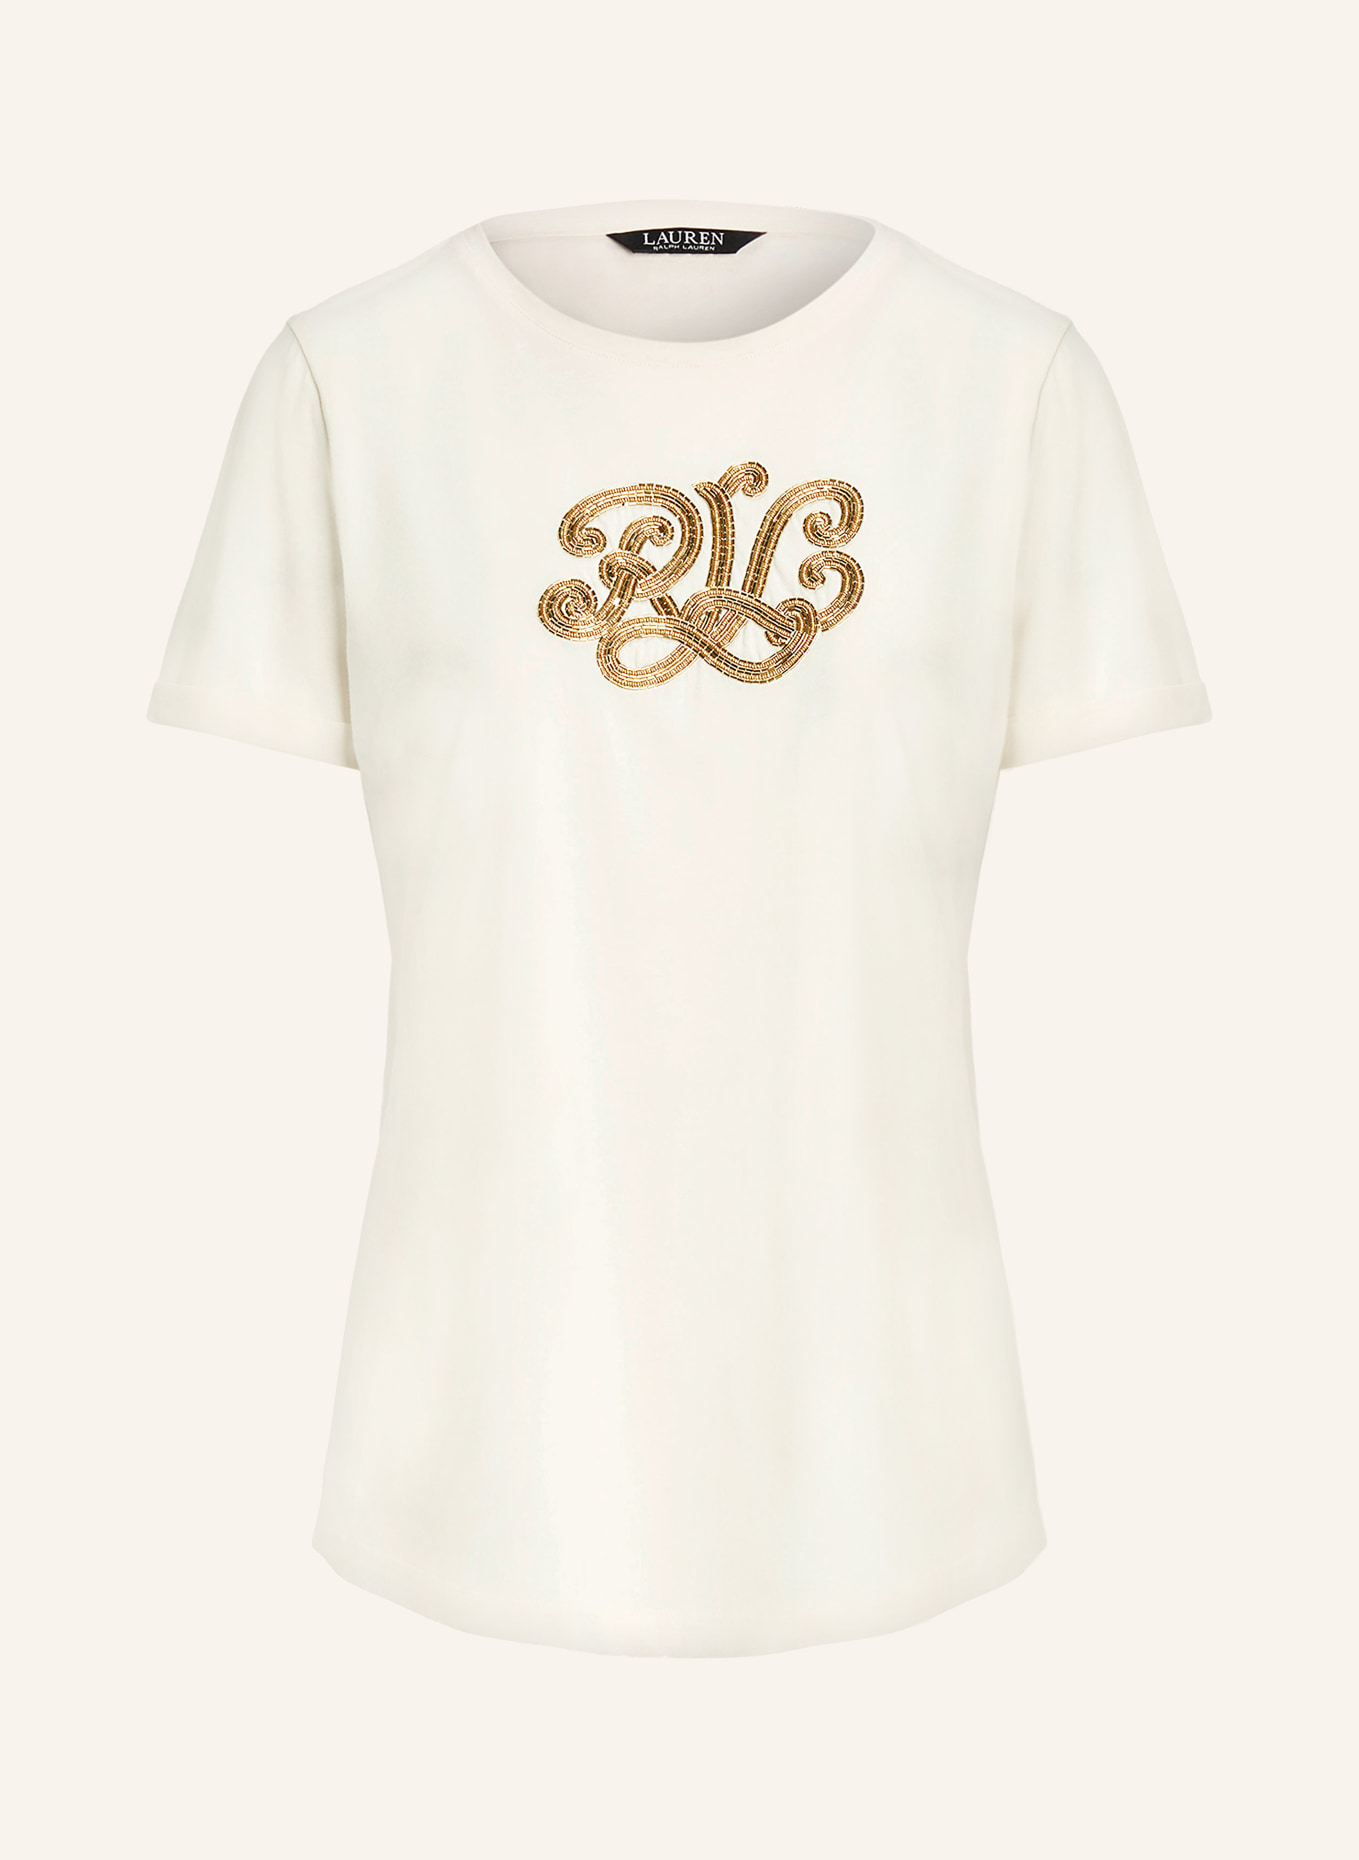 LAUREN RALPH LAUREN T-Shirt mit Schmucksteinen, Farbe: CREME/ GOLD (Bild 1)